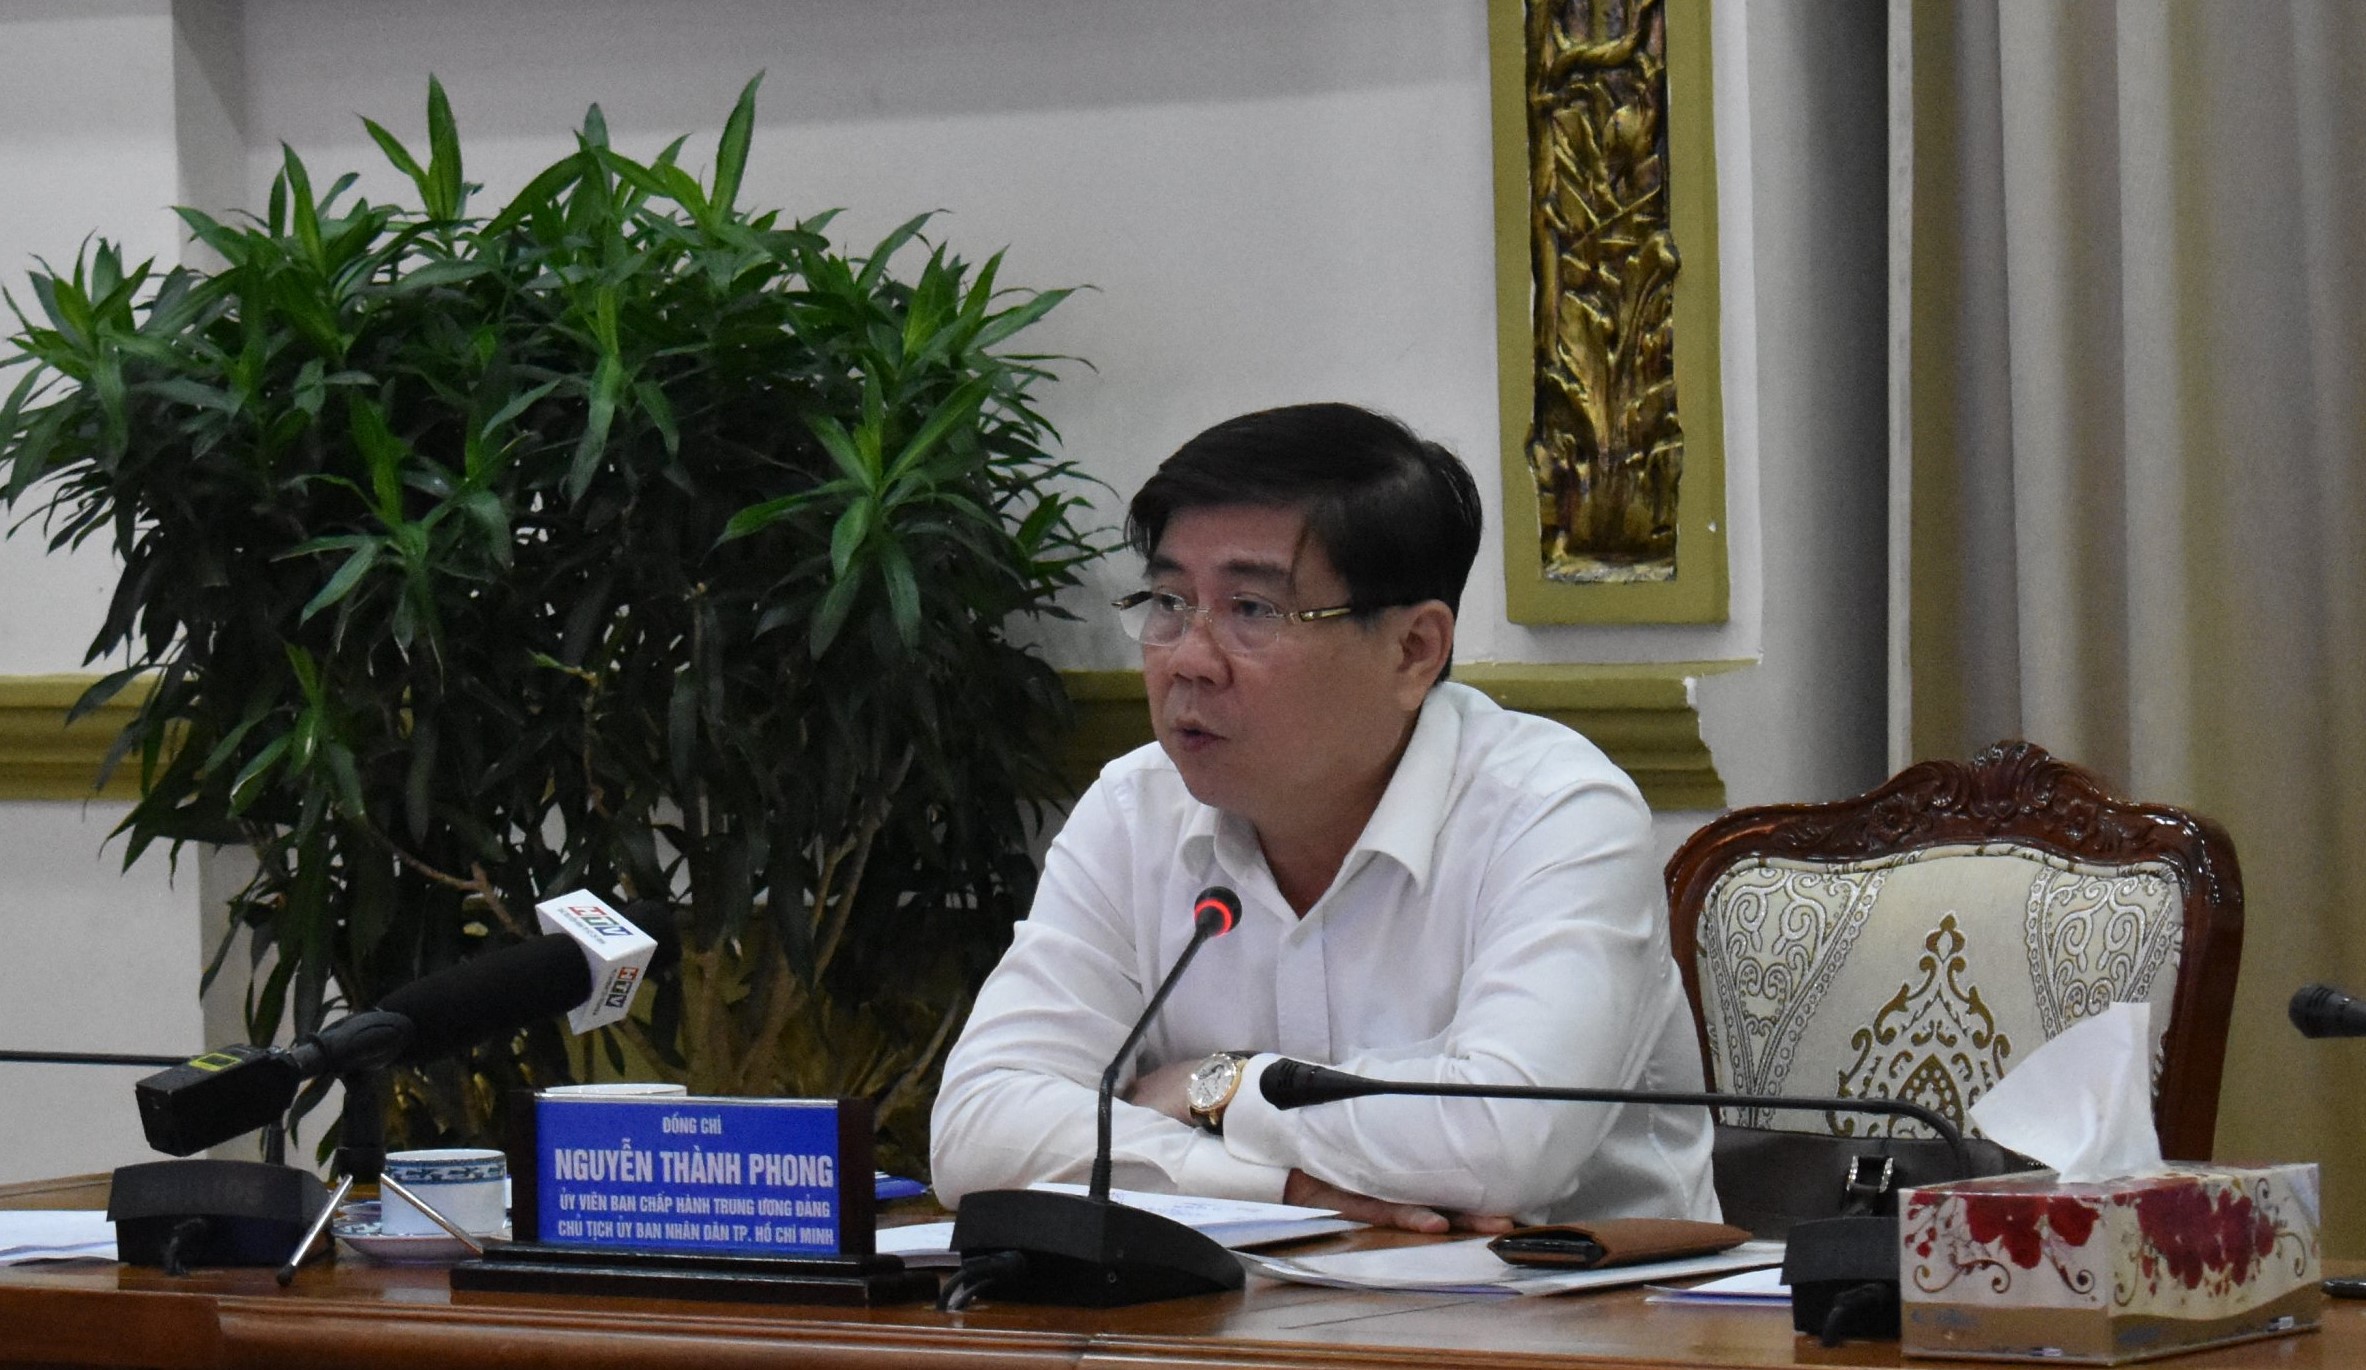 Ngày 15/3, theo yêu cầu của Chủ tịch UBND TP.HCM Nguyễn Thành Phong, tất cả các quận huyện phải xây dựng xong đề án và được UBND TP.HCM duyệt nội dung, kế hoạch triển khai thực hiện